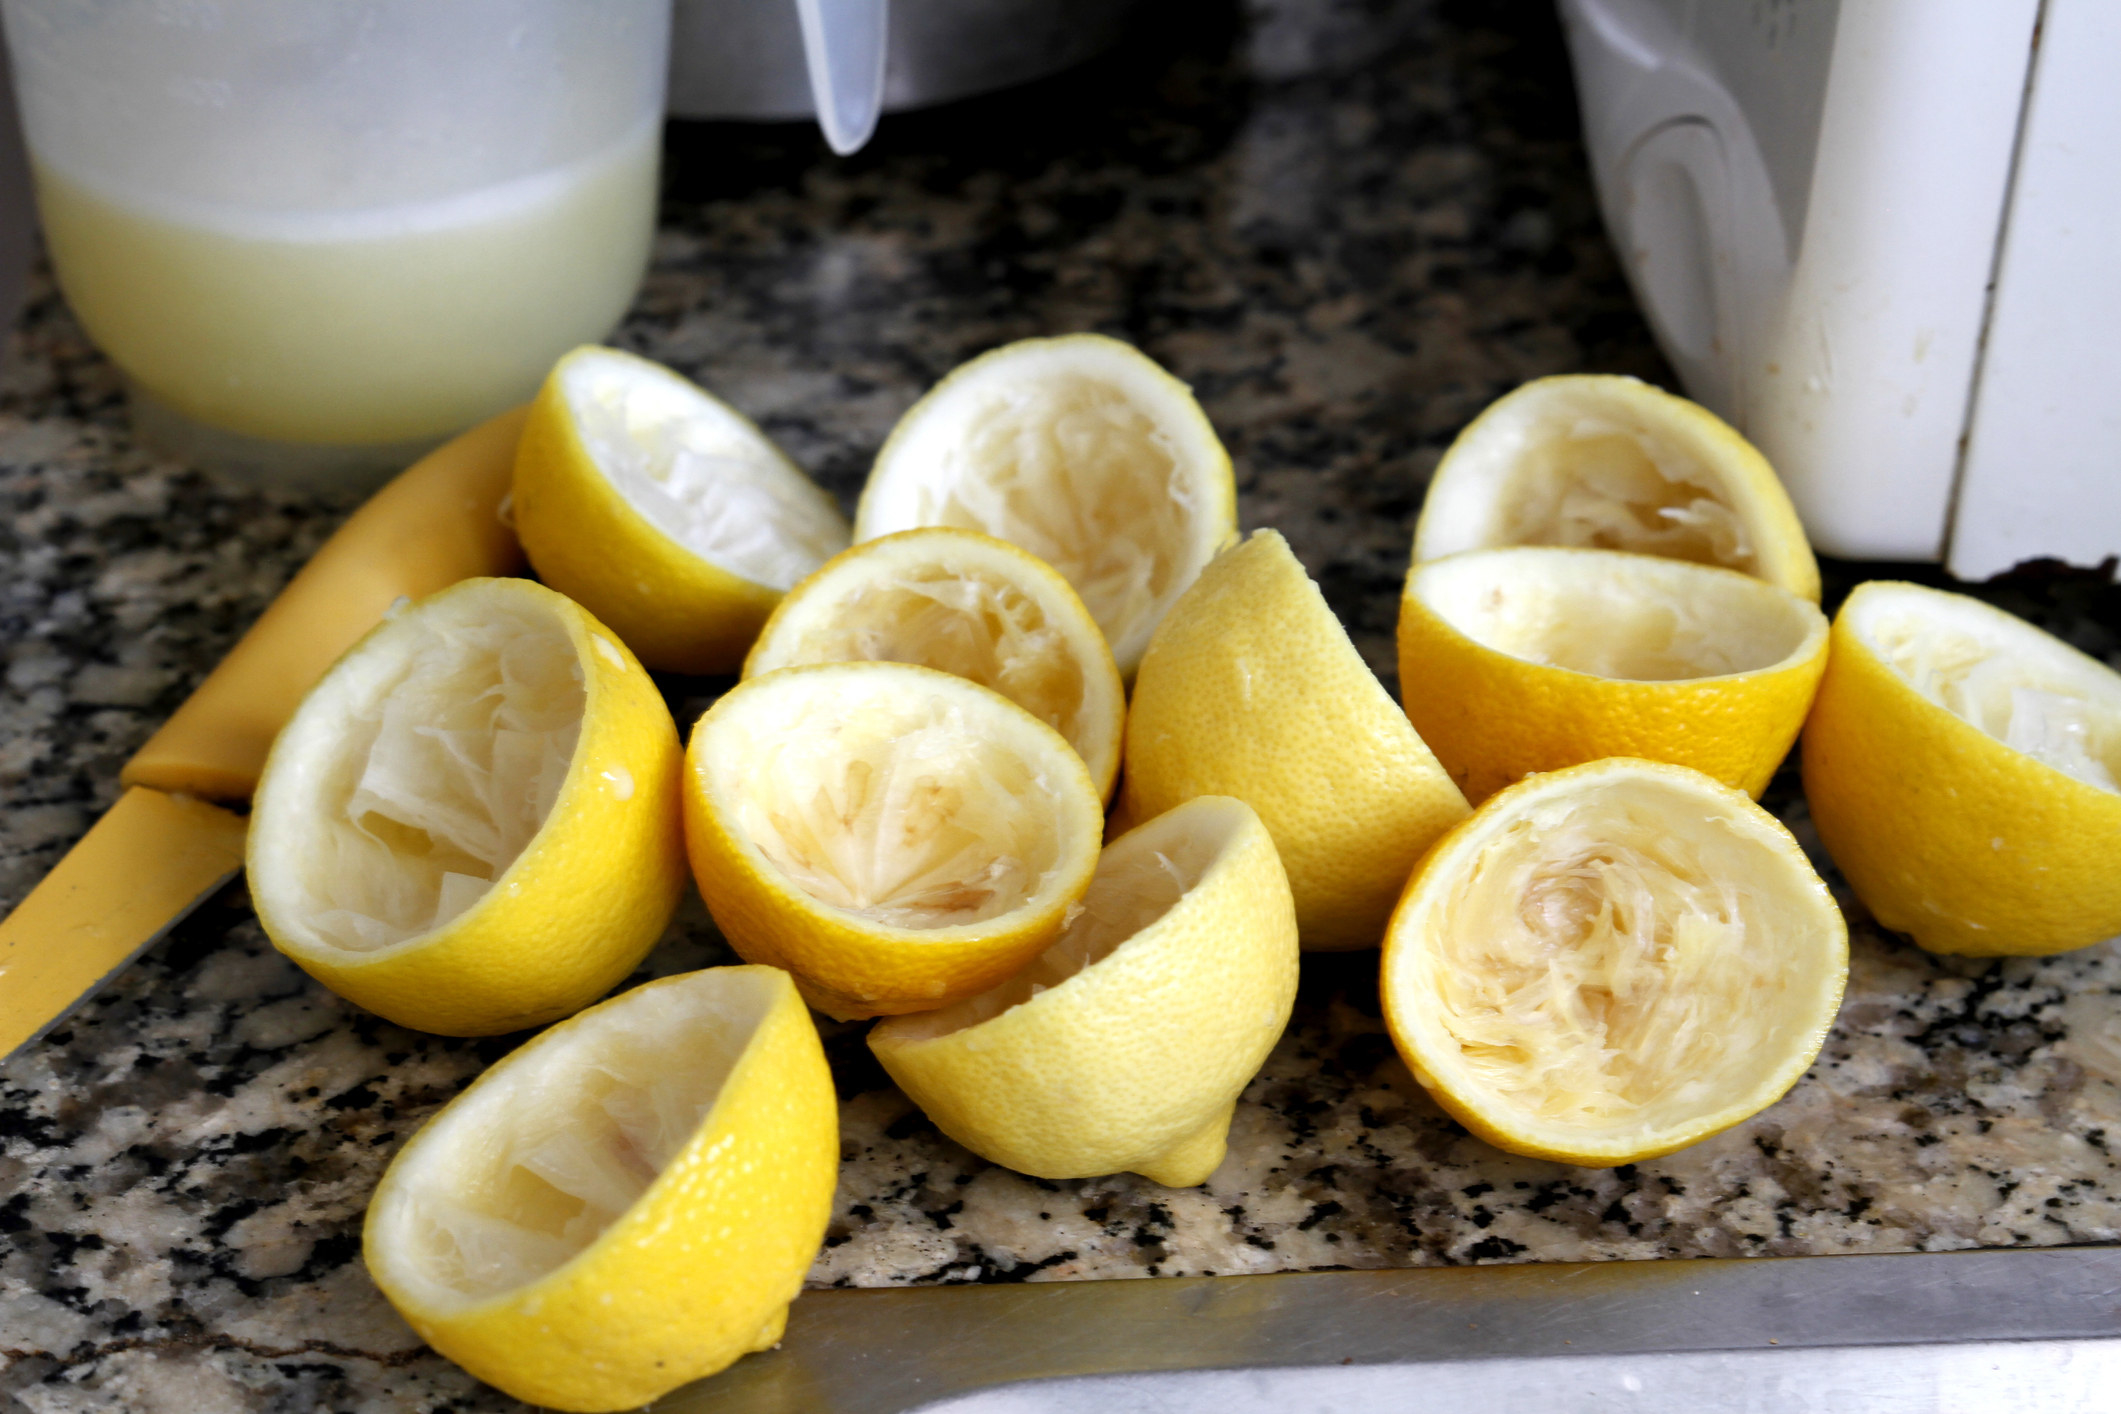 Squeezed lemons for lemonade.